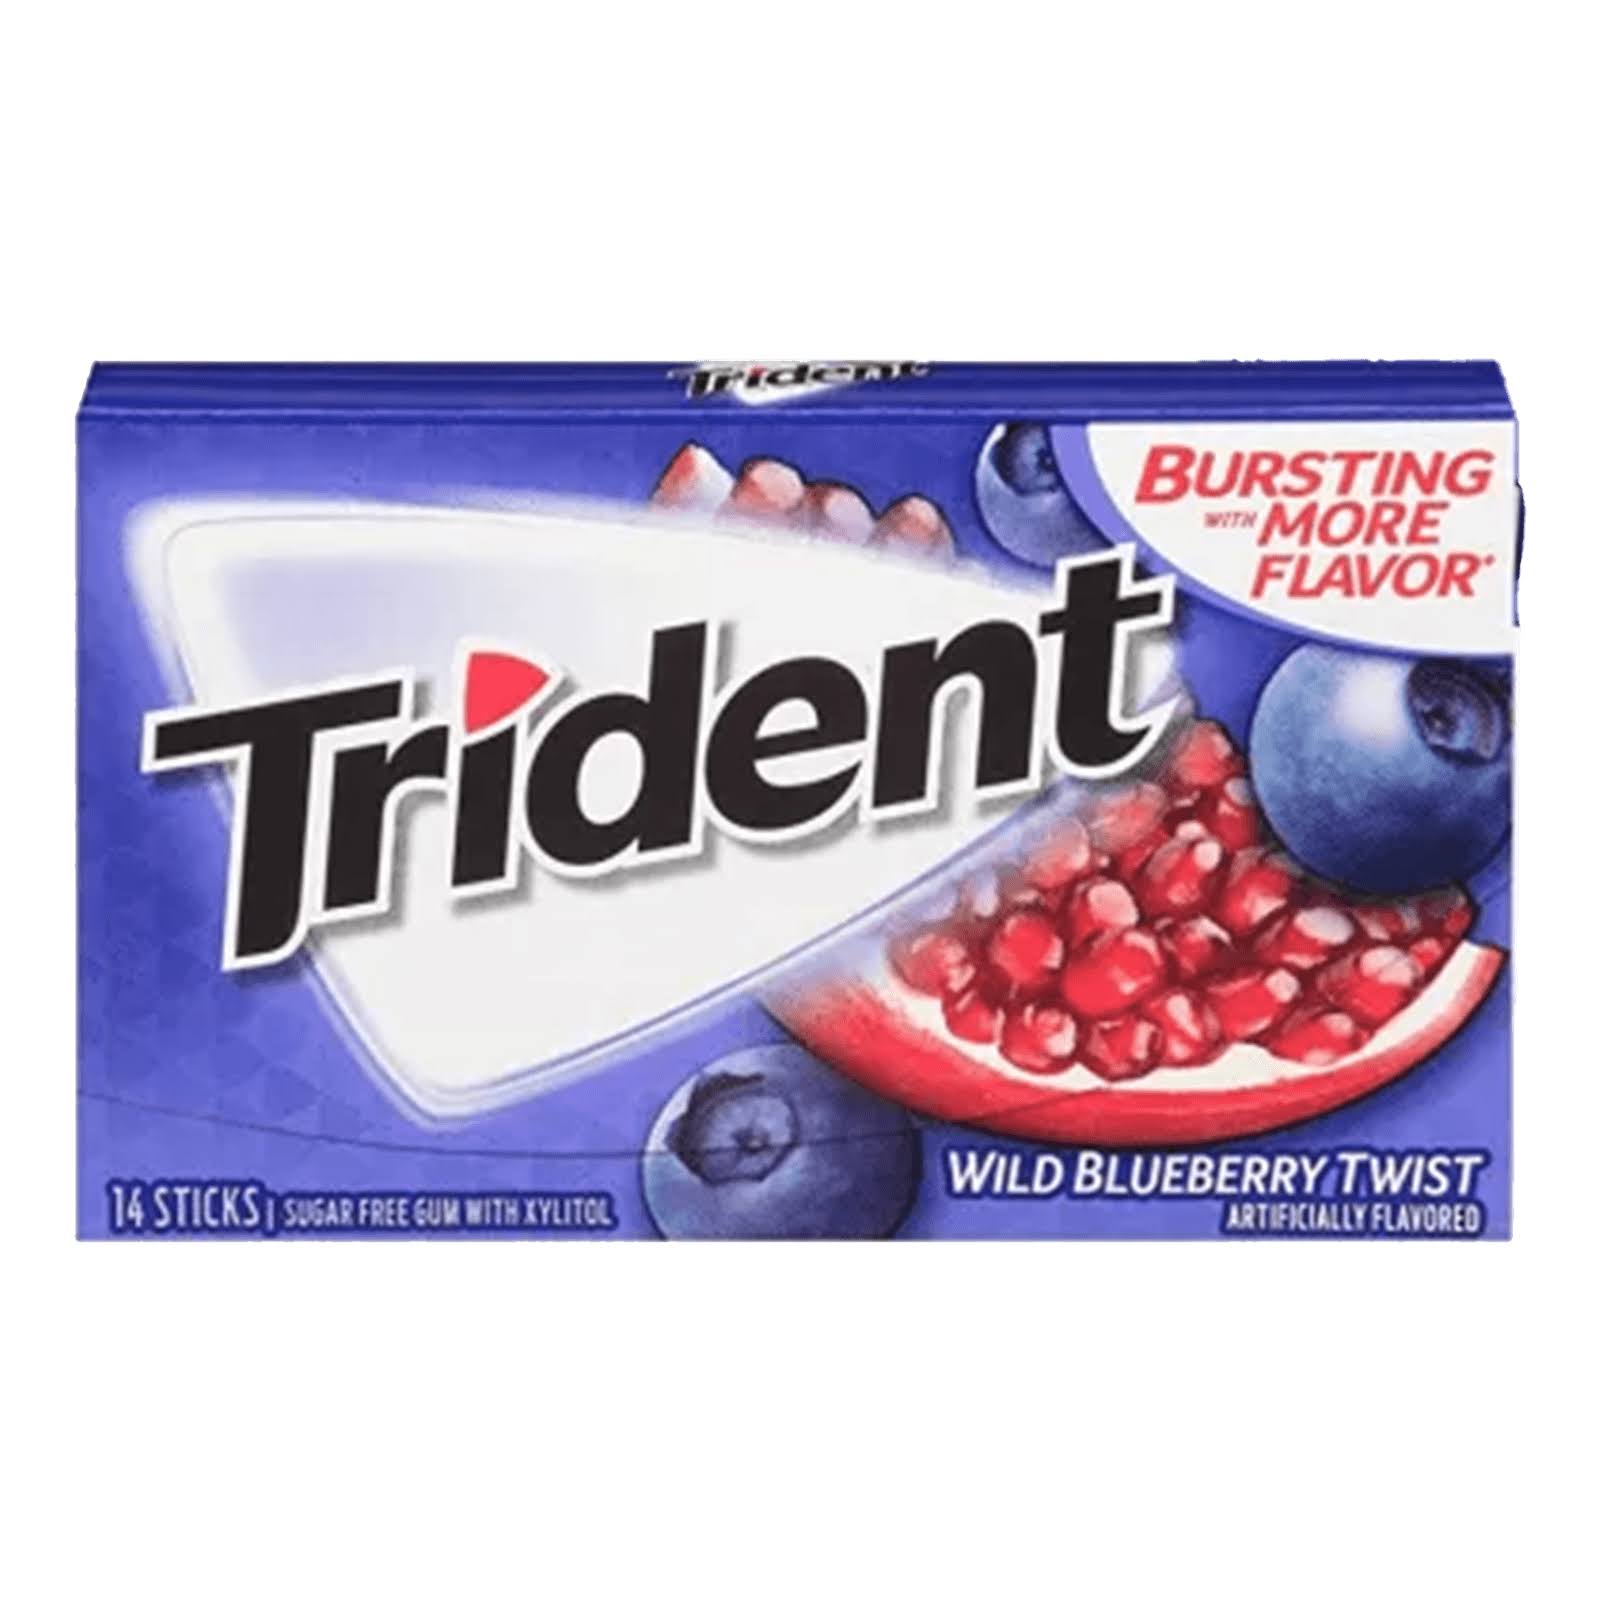 Trident Wild Blueberry Twist